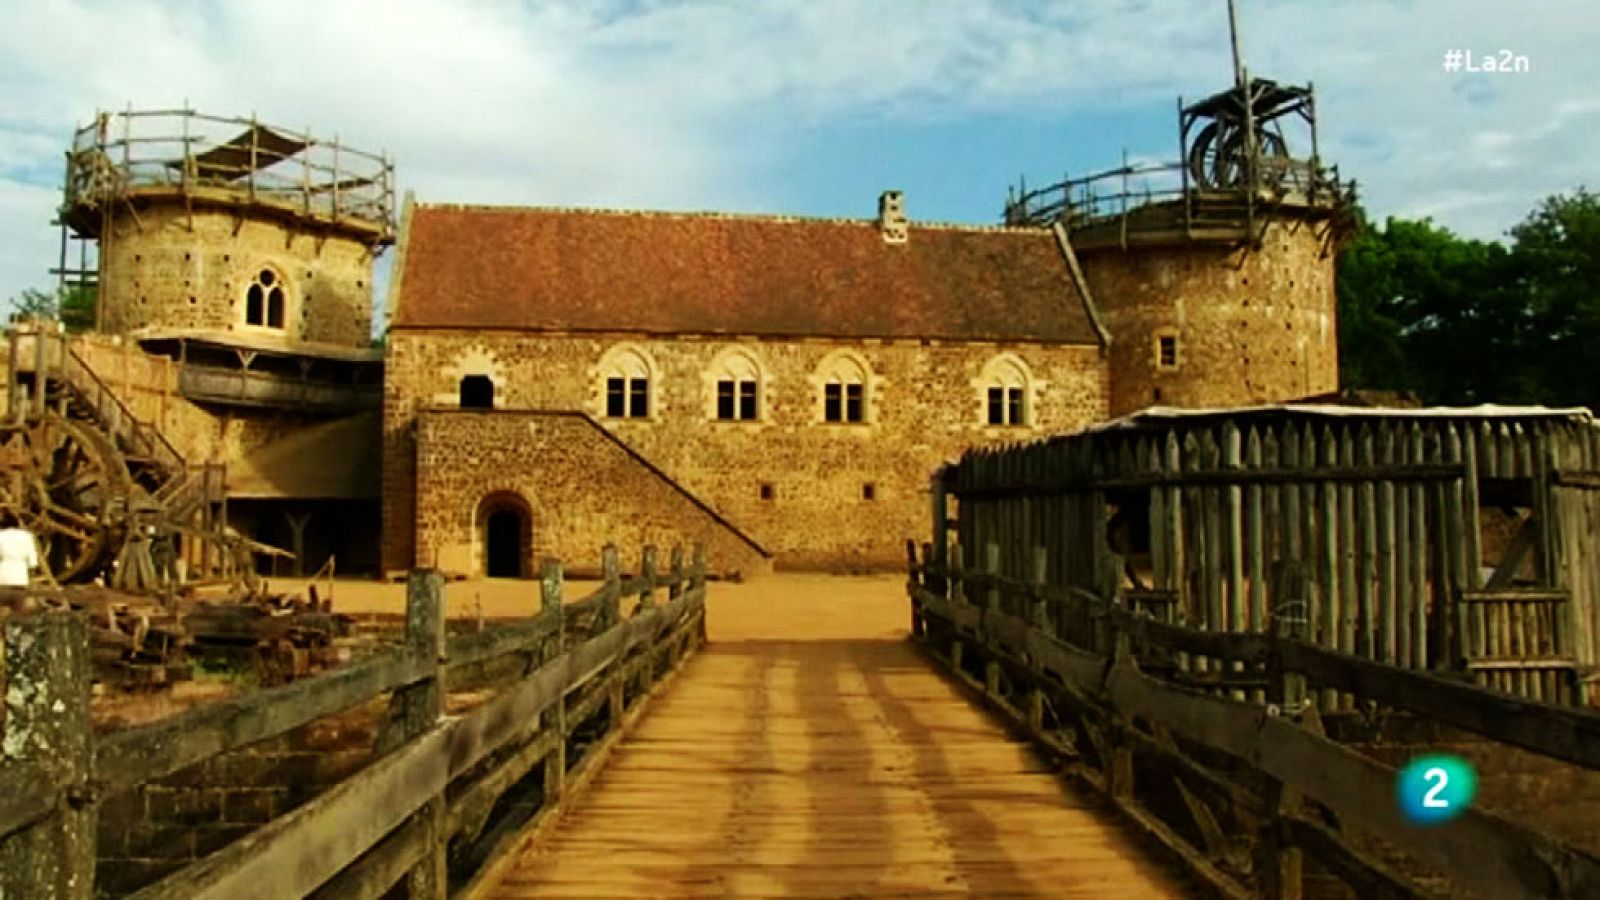 La 2 Noticias - Guédelon. El reto de construir un castillo del siglo XIII en el siglo XXI